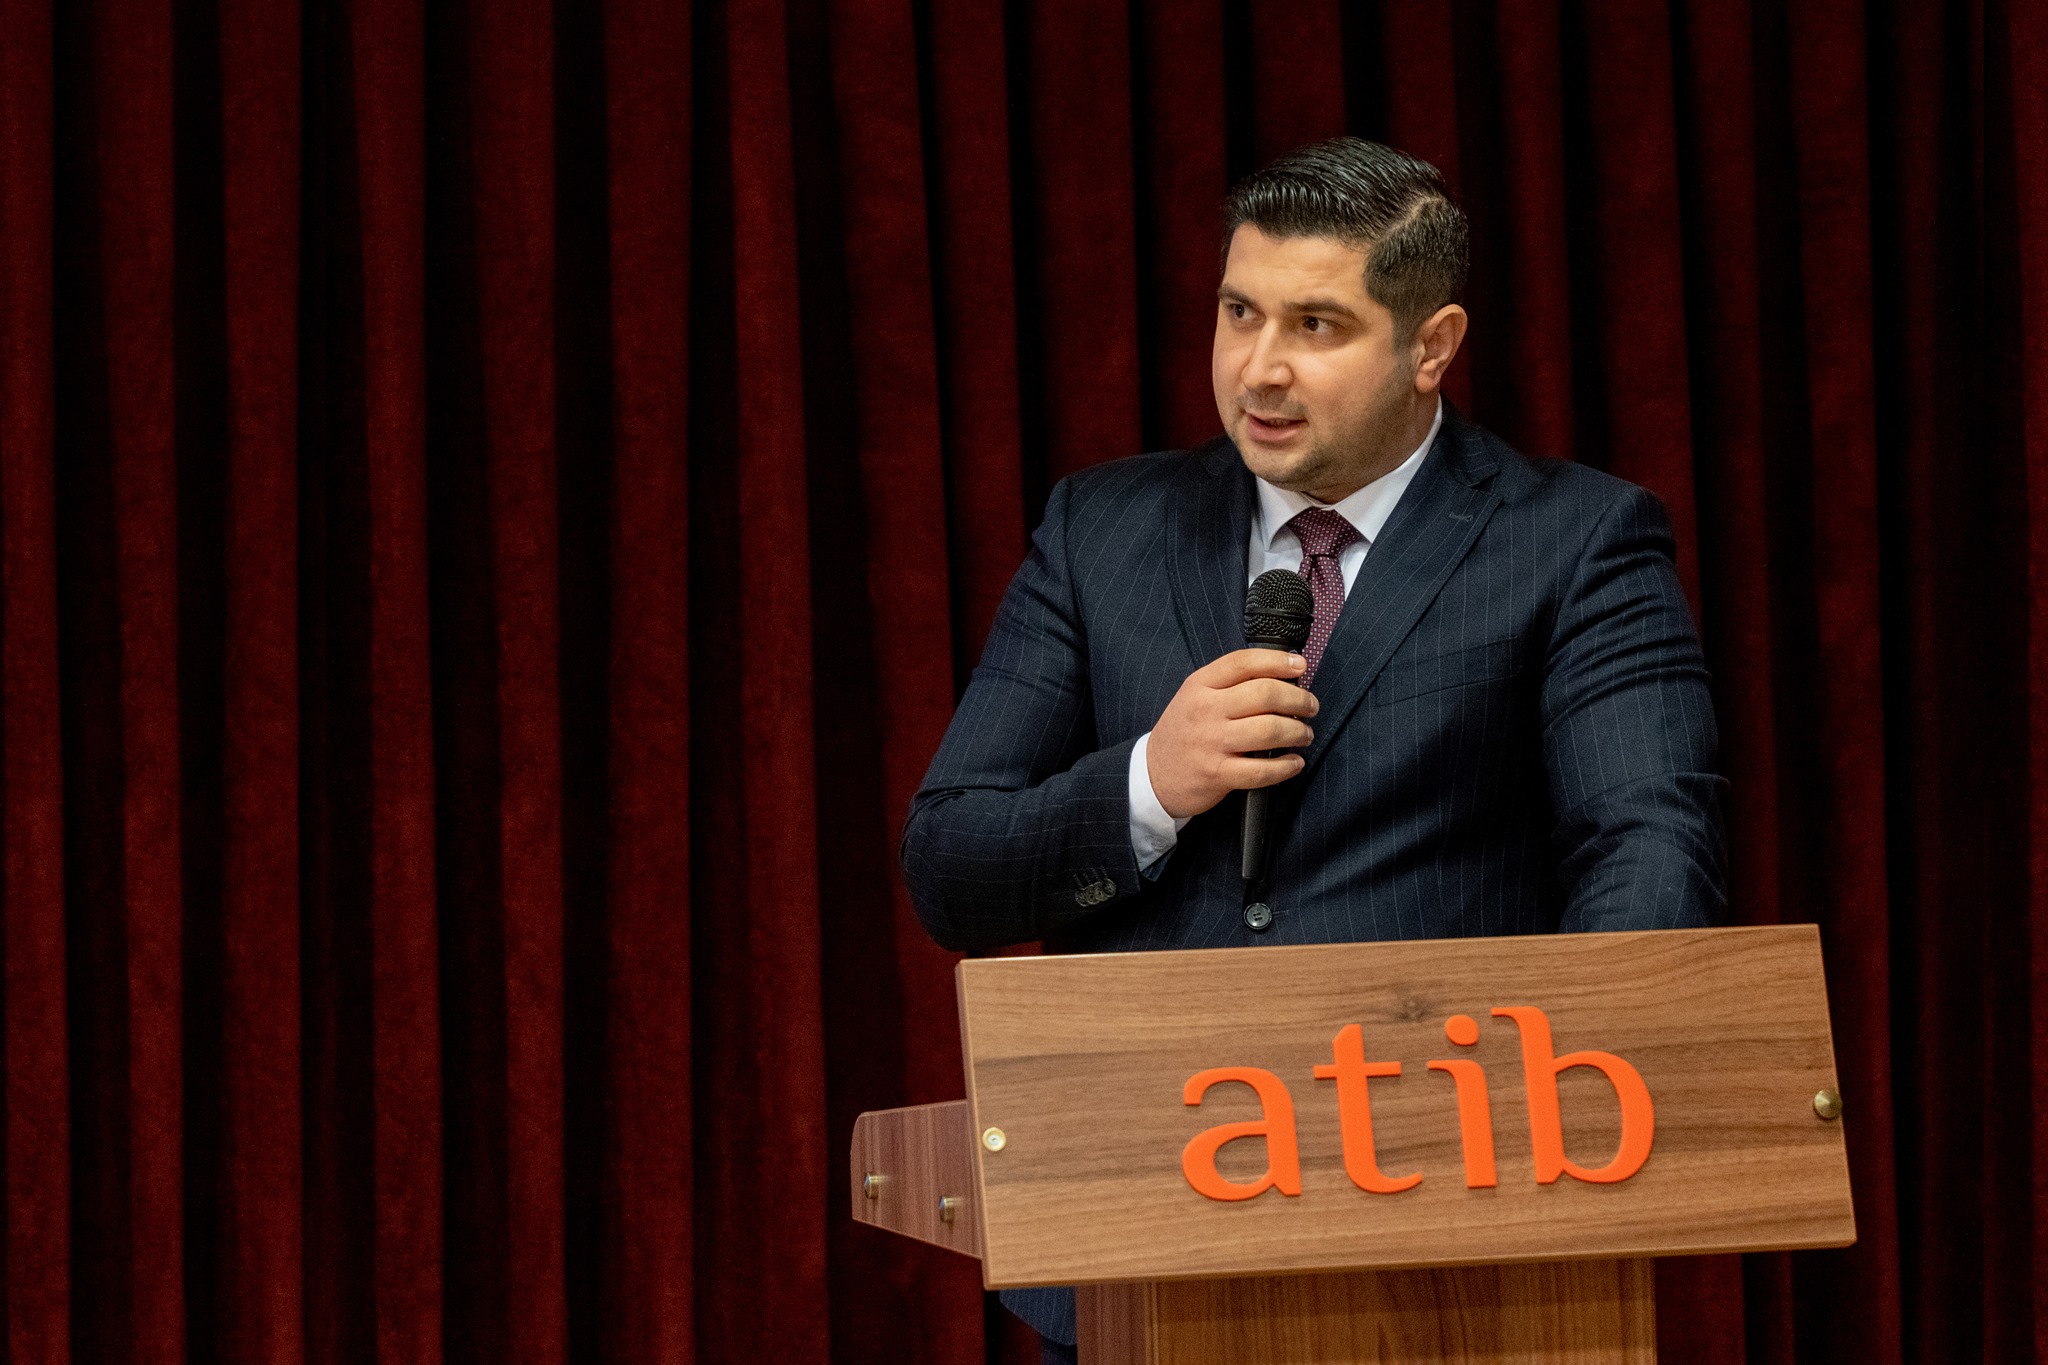 ATIB Union: Fatih Yilmaz als Bundesvorsitzender wiedergewählt